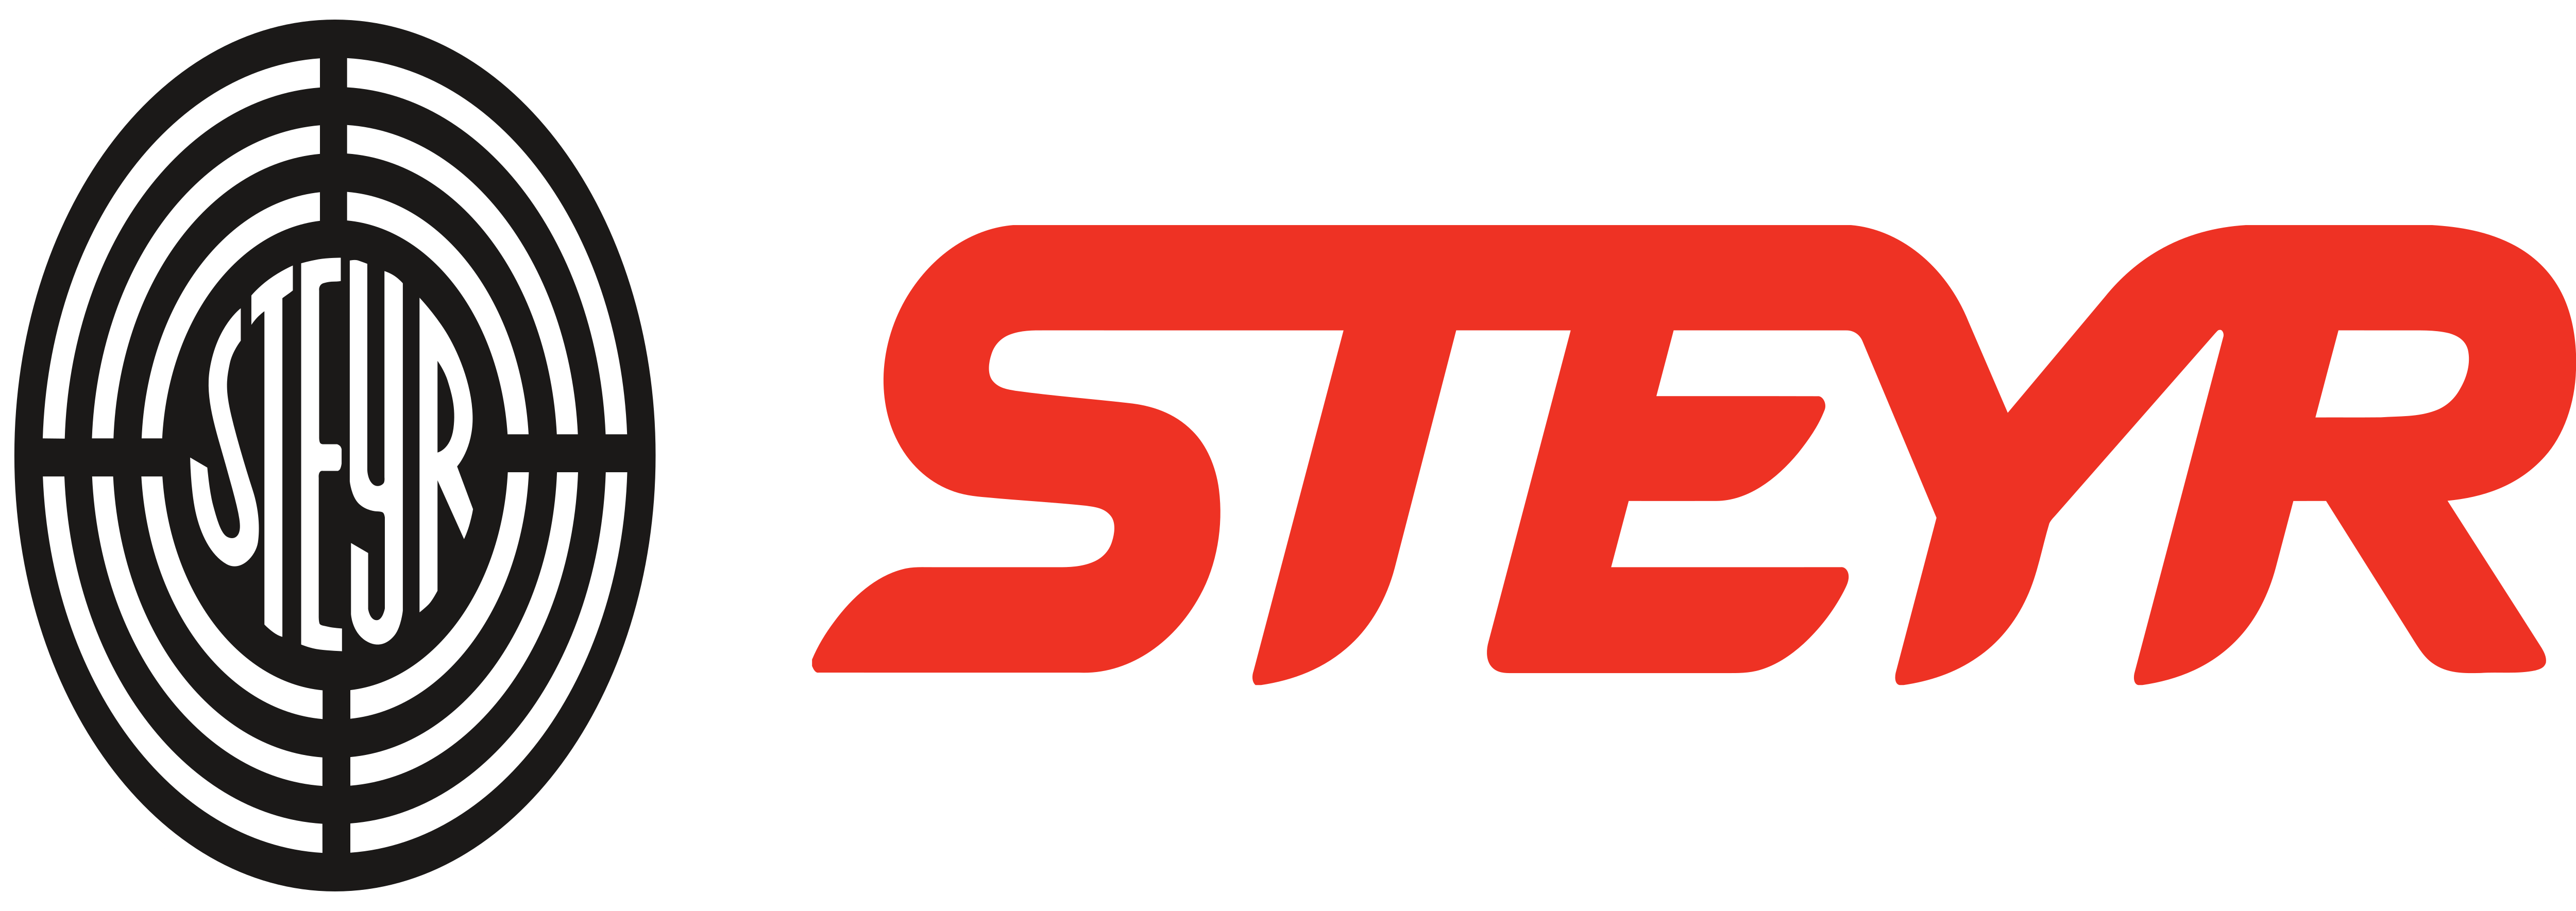 Steyr Logo - Steyr Mannlicher AG – Logos Download